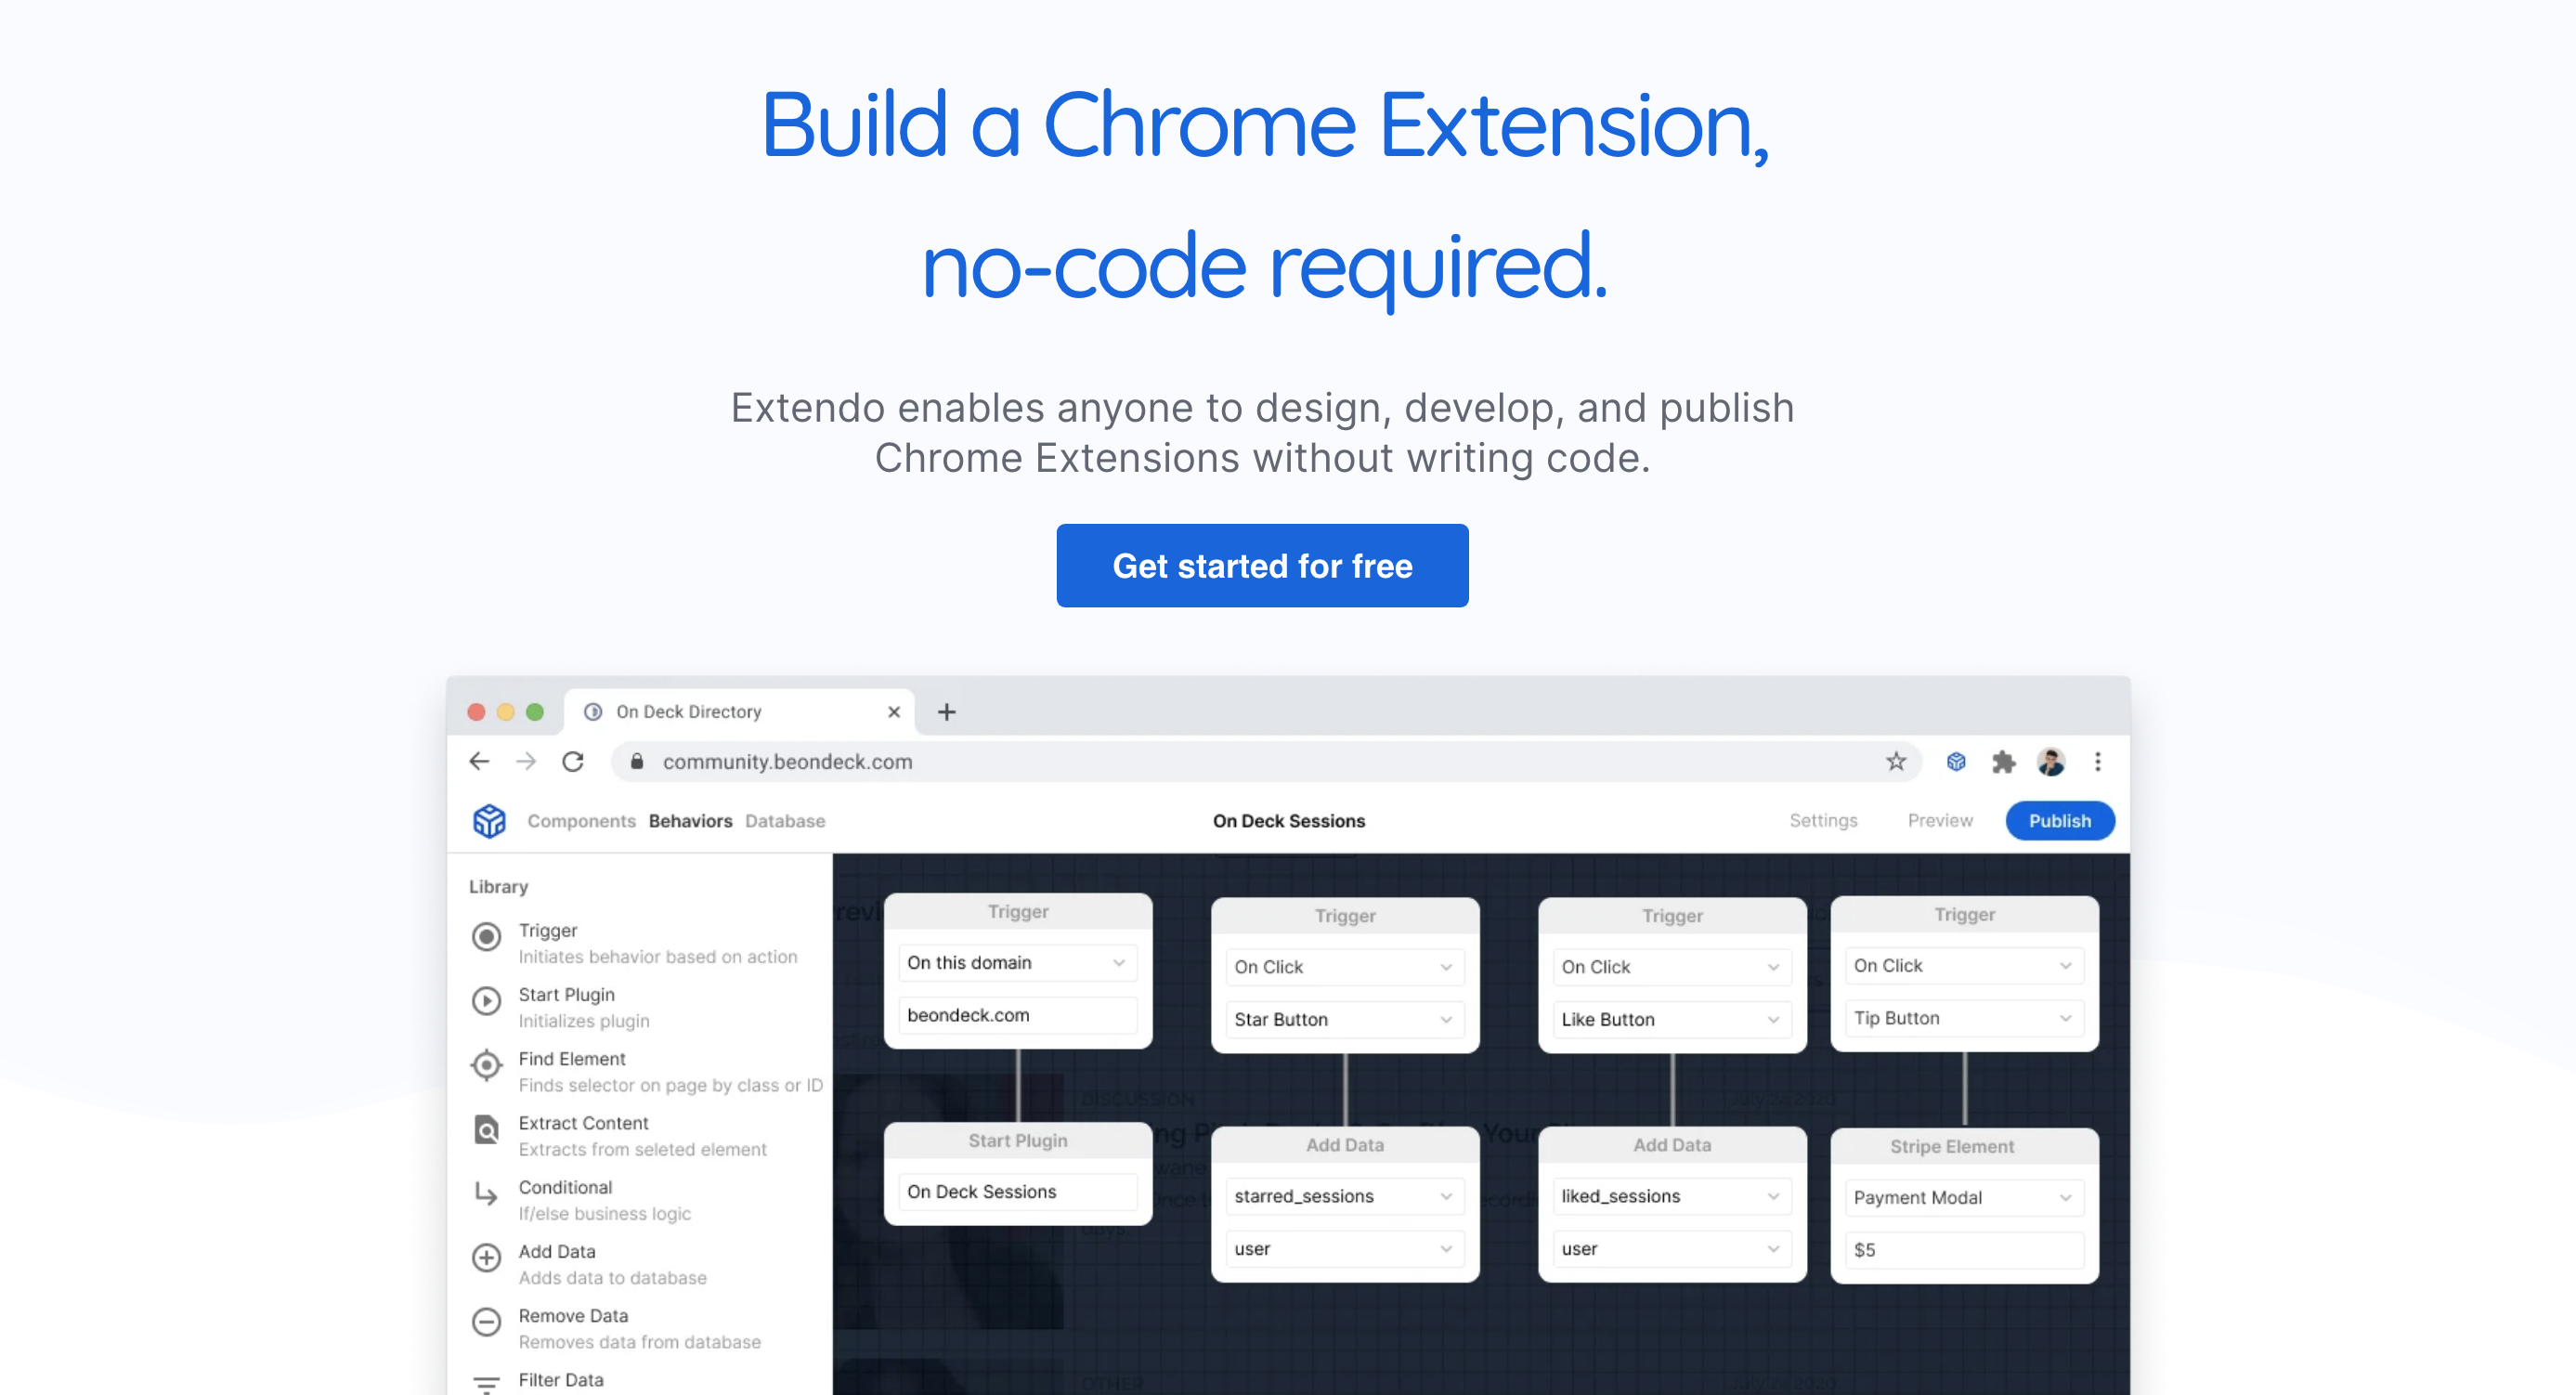 EXTENDO : Créer vos extension CHROME en NoCode